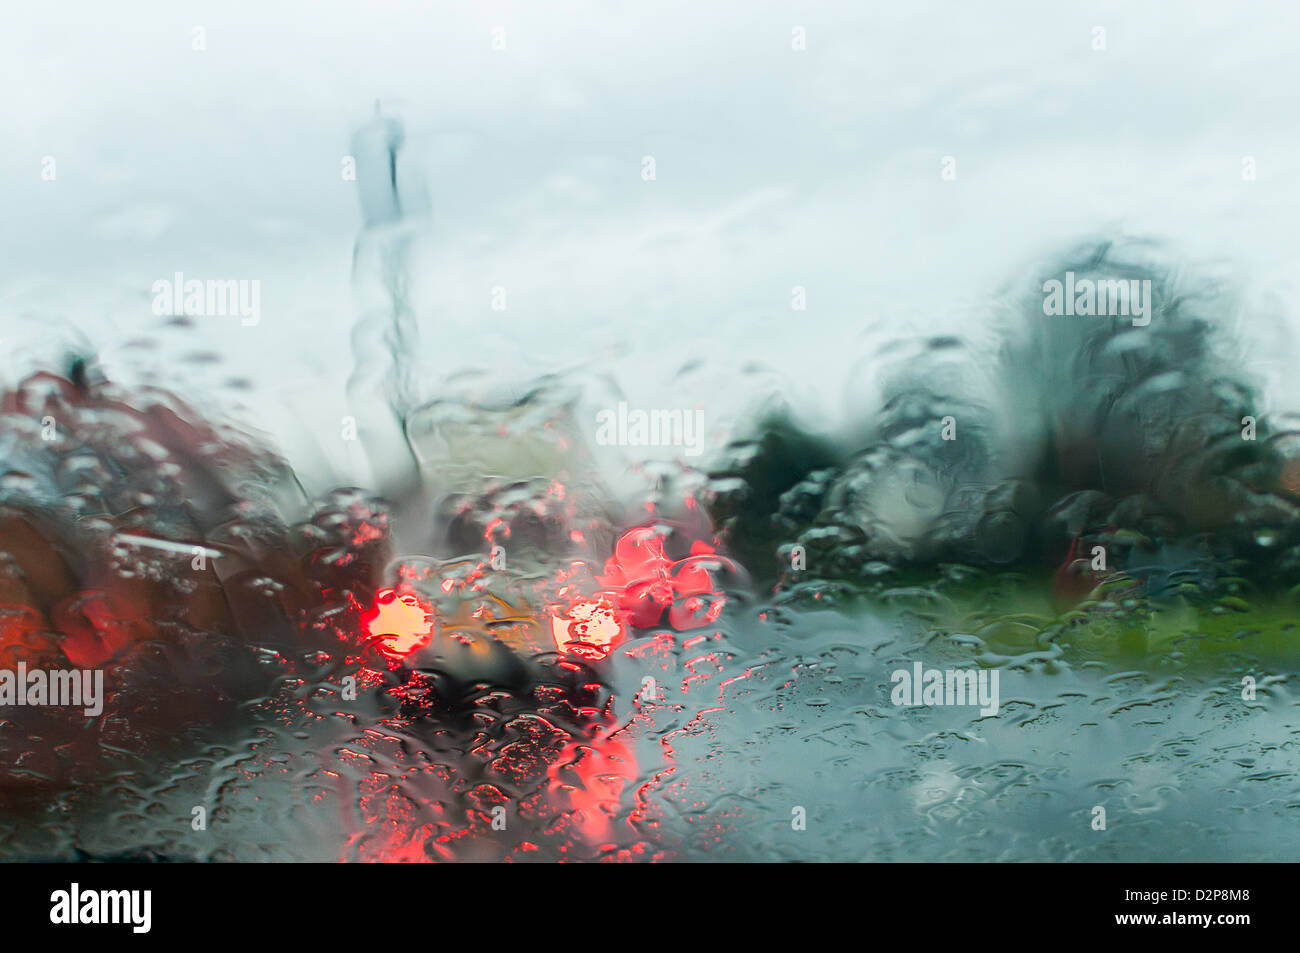 Parabrezza auto wet weather scarse condizioni di guida lancashire Inghilterra uk Europa la guida in condizioni di scarsa visibilità in condizioni di scarsa visibilità la frenata Foto Stock